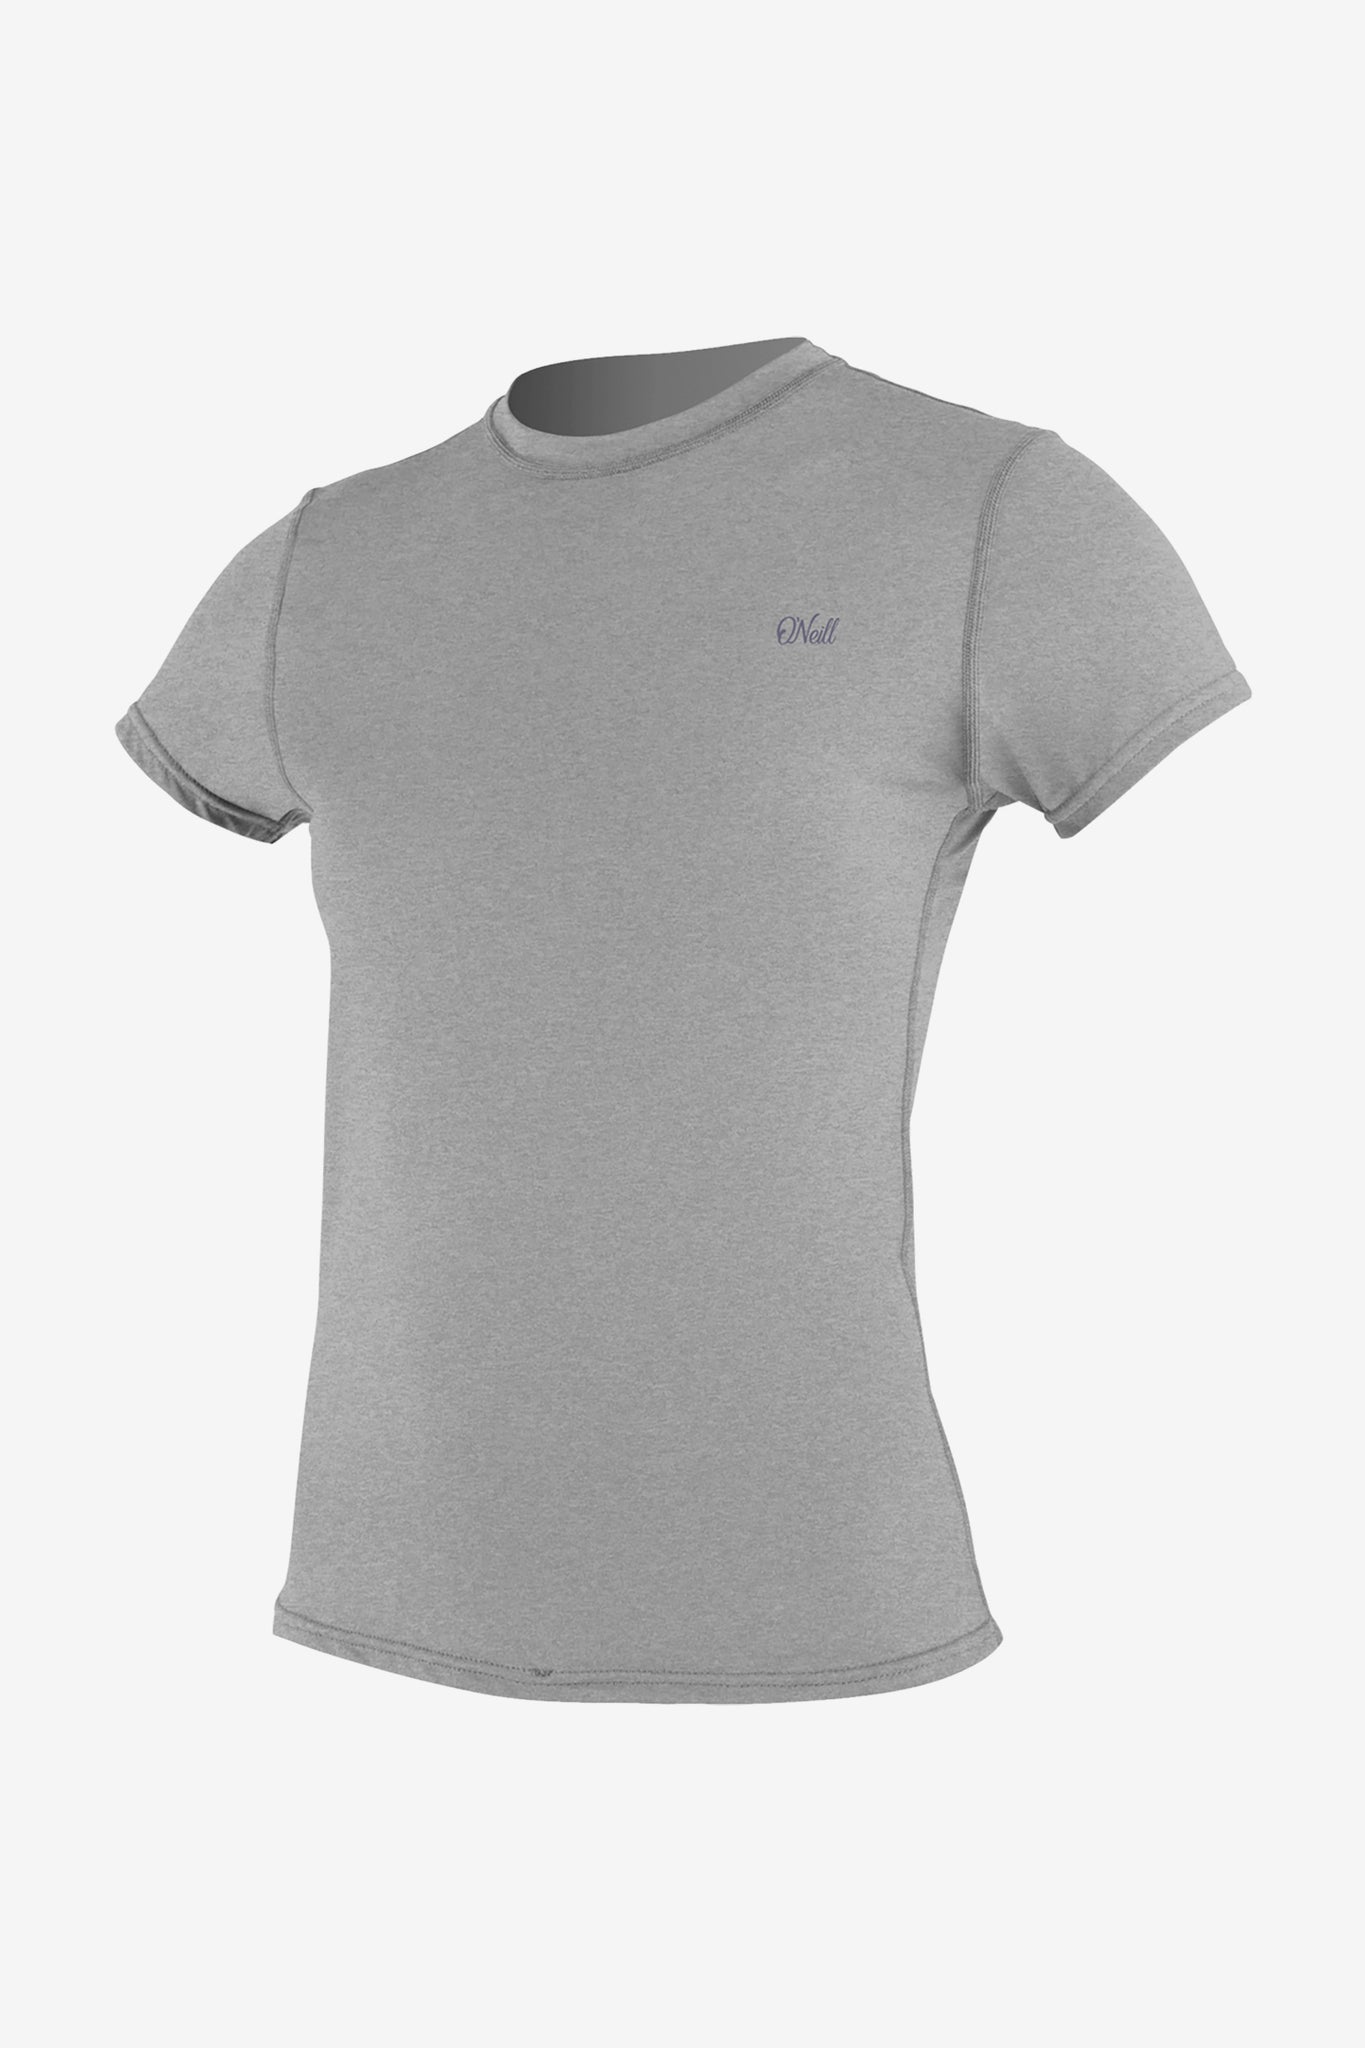 O'Neill Women's Blueprint UV Short Sleeve Sun Shirt at